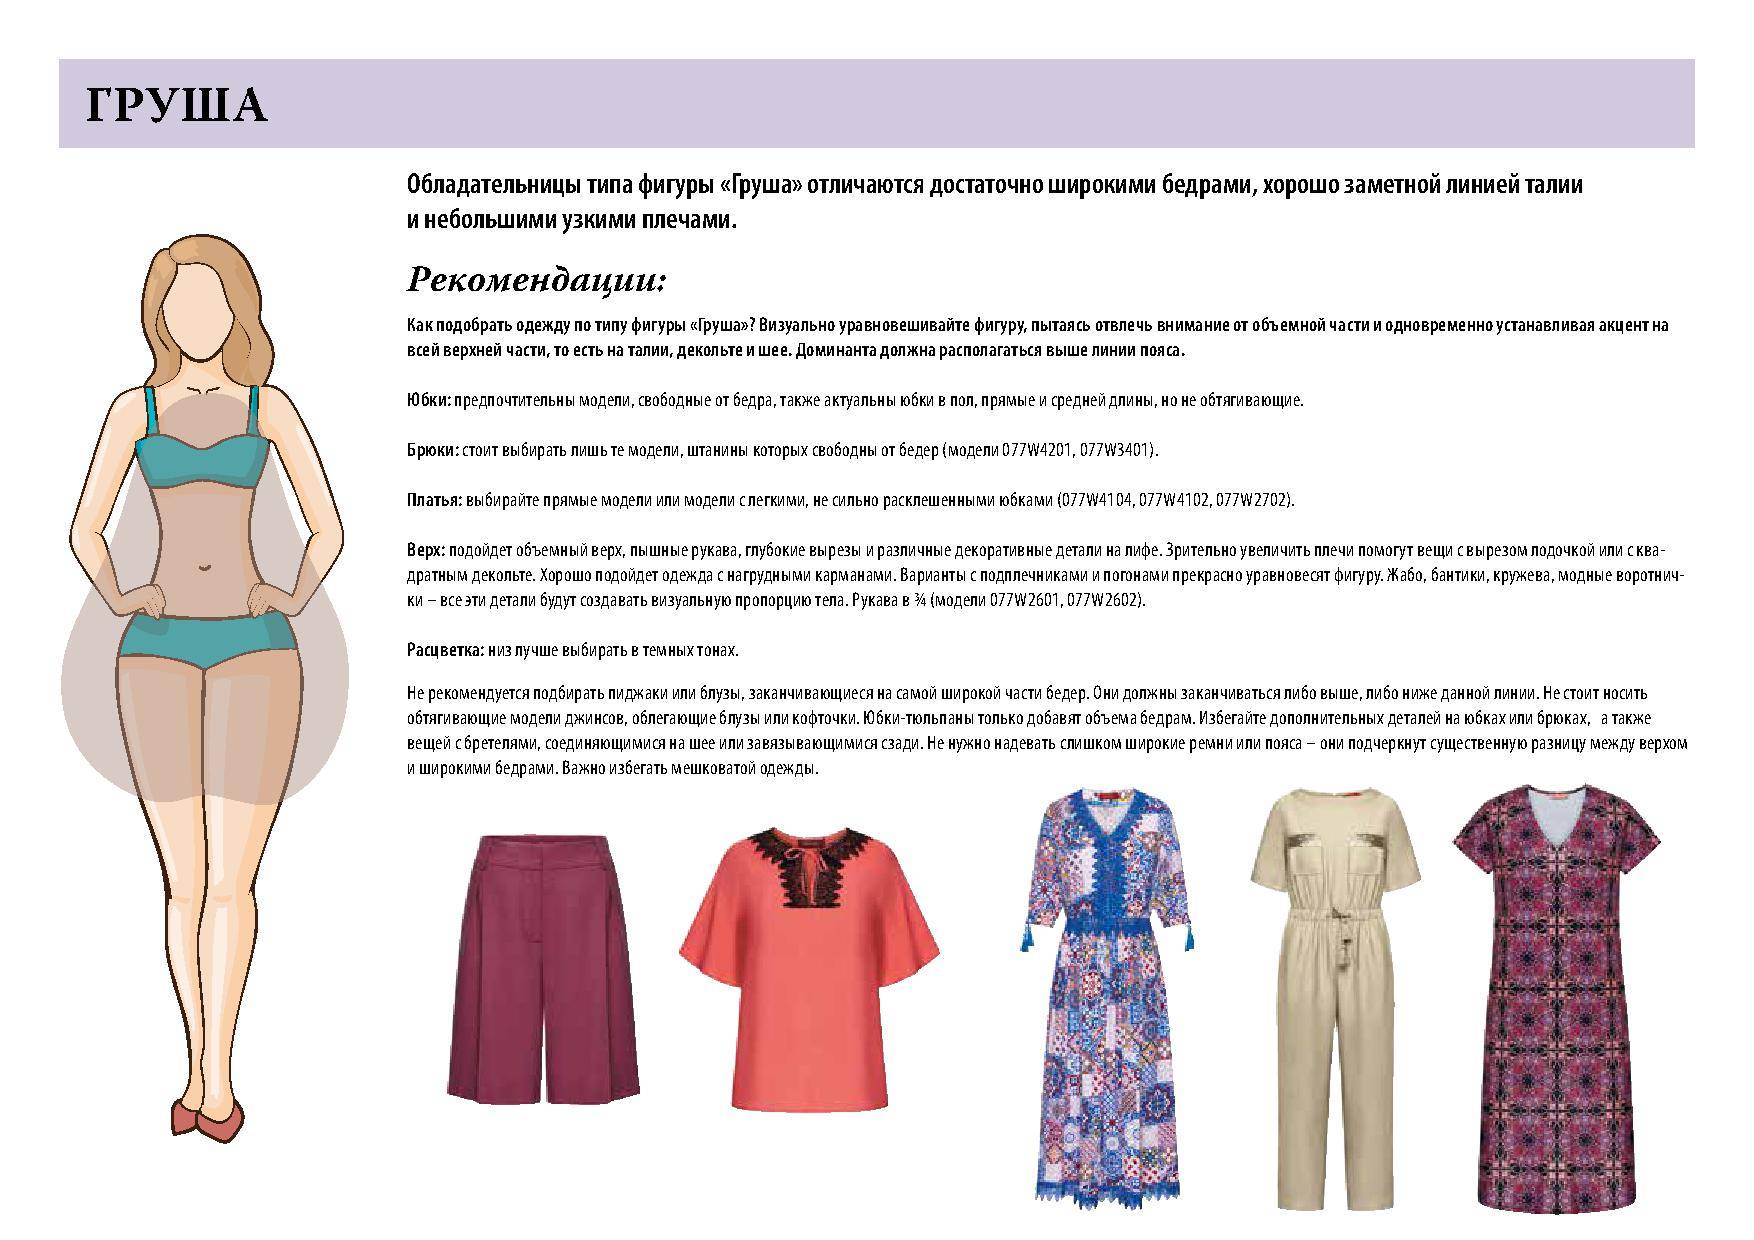 Подбор платья для фигуры "прямоугольник" — какие фасоны платьев подходят для прямоугольного типа фигуры